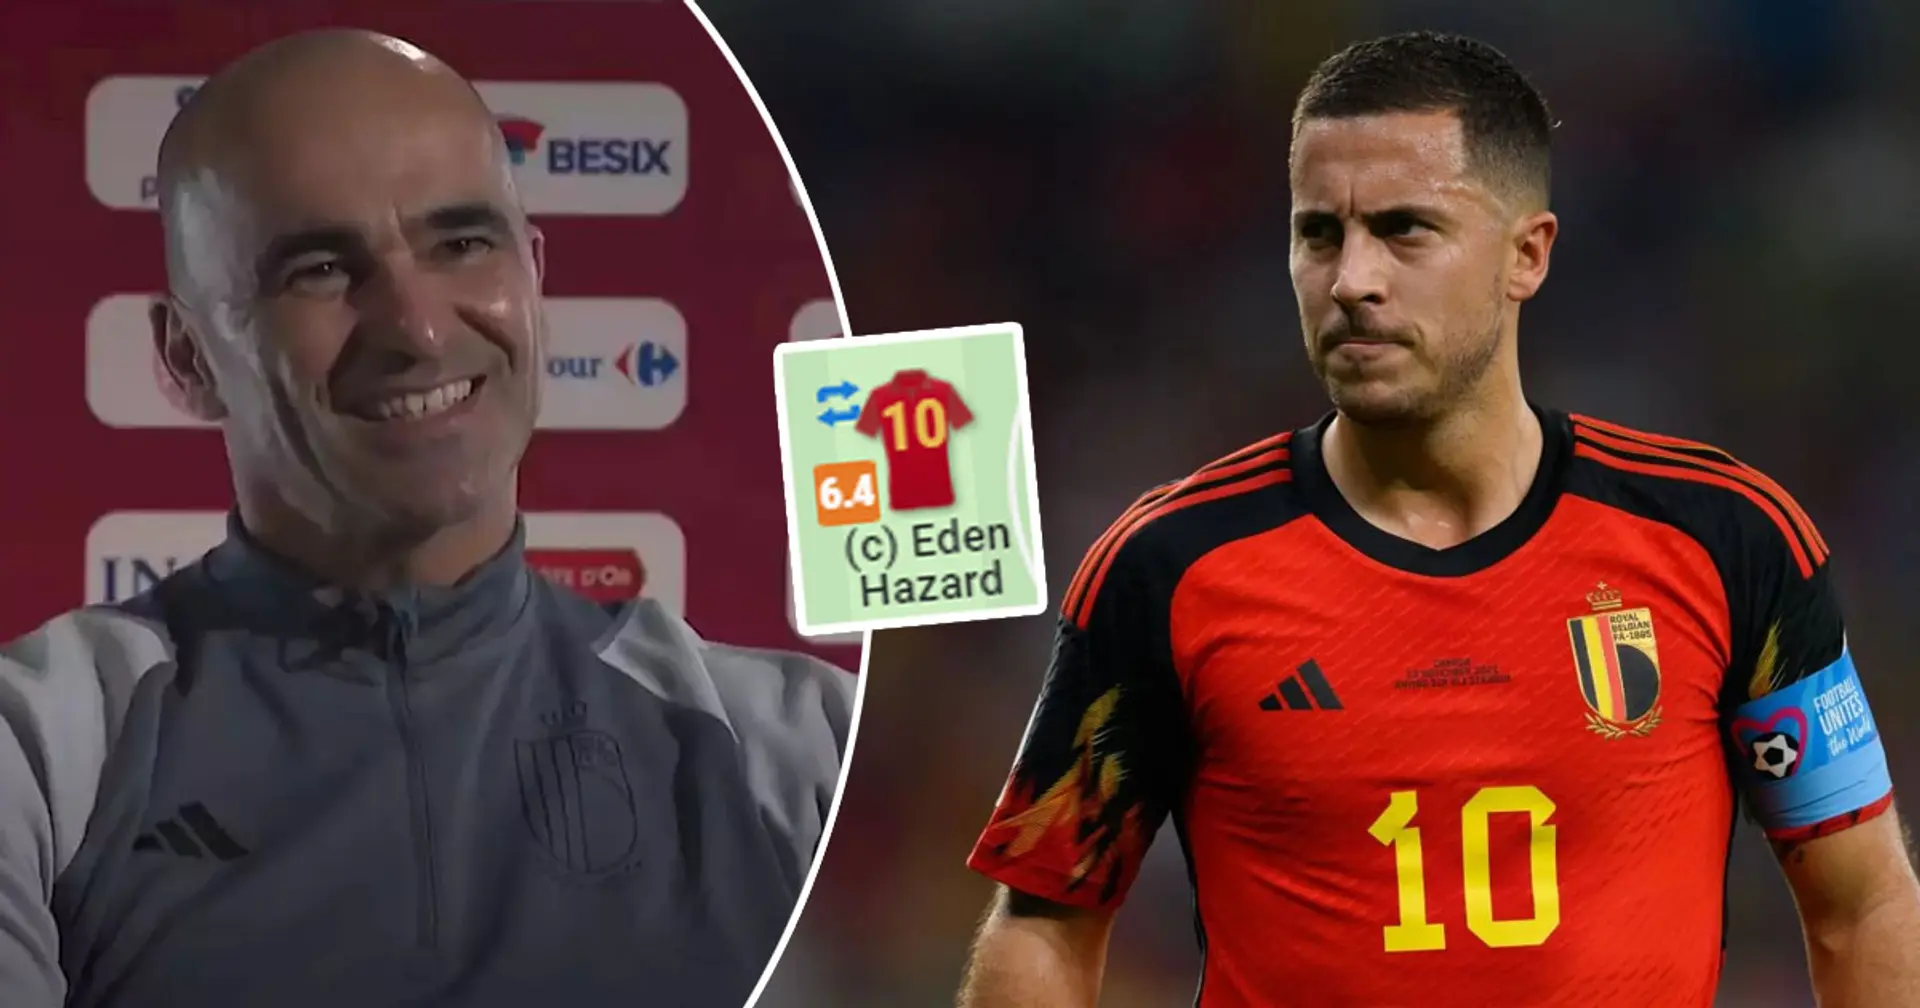 El entrenador de Bélgica elogia a Hazard por el 'gran' partido contra Marruecos: las estadísticas sugieren que no fue nada especial